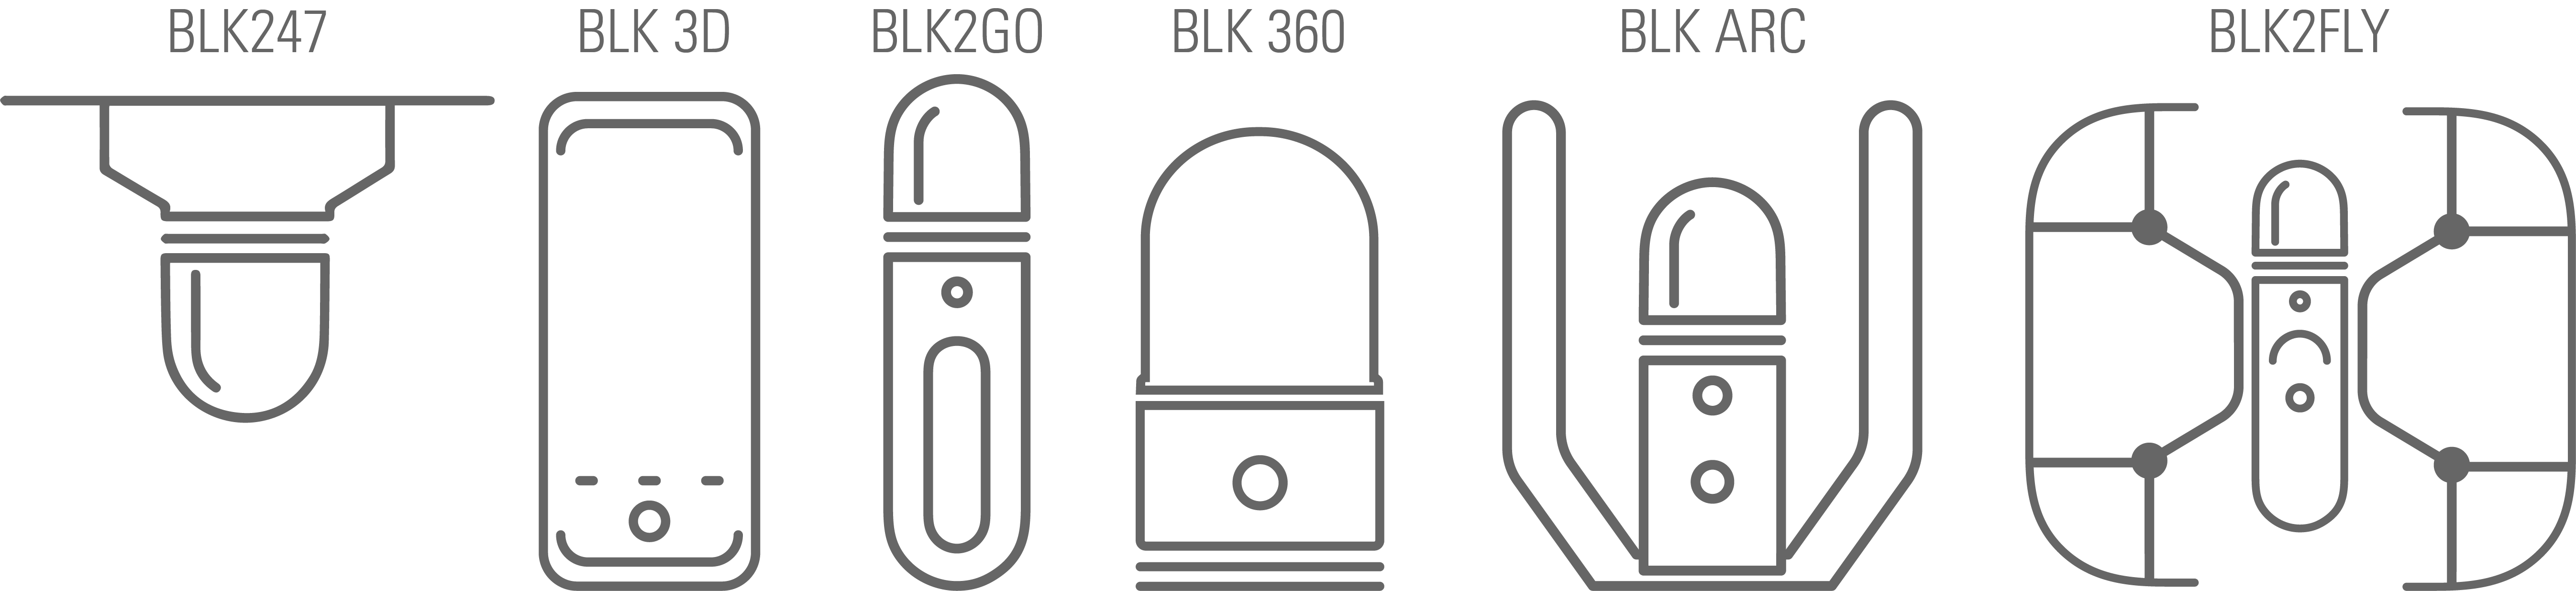 Vektordiagramme der BLK-Produkte mit Beschriftungen